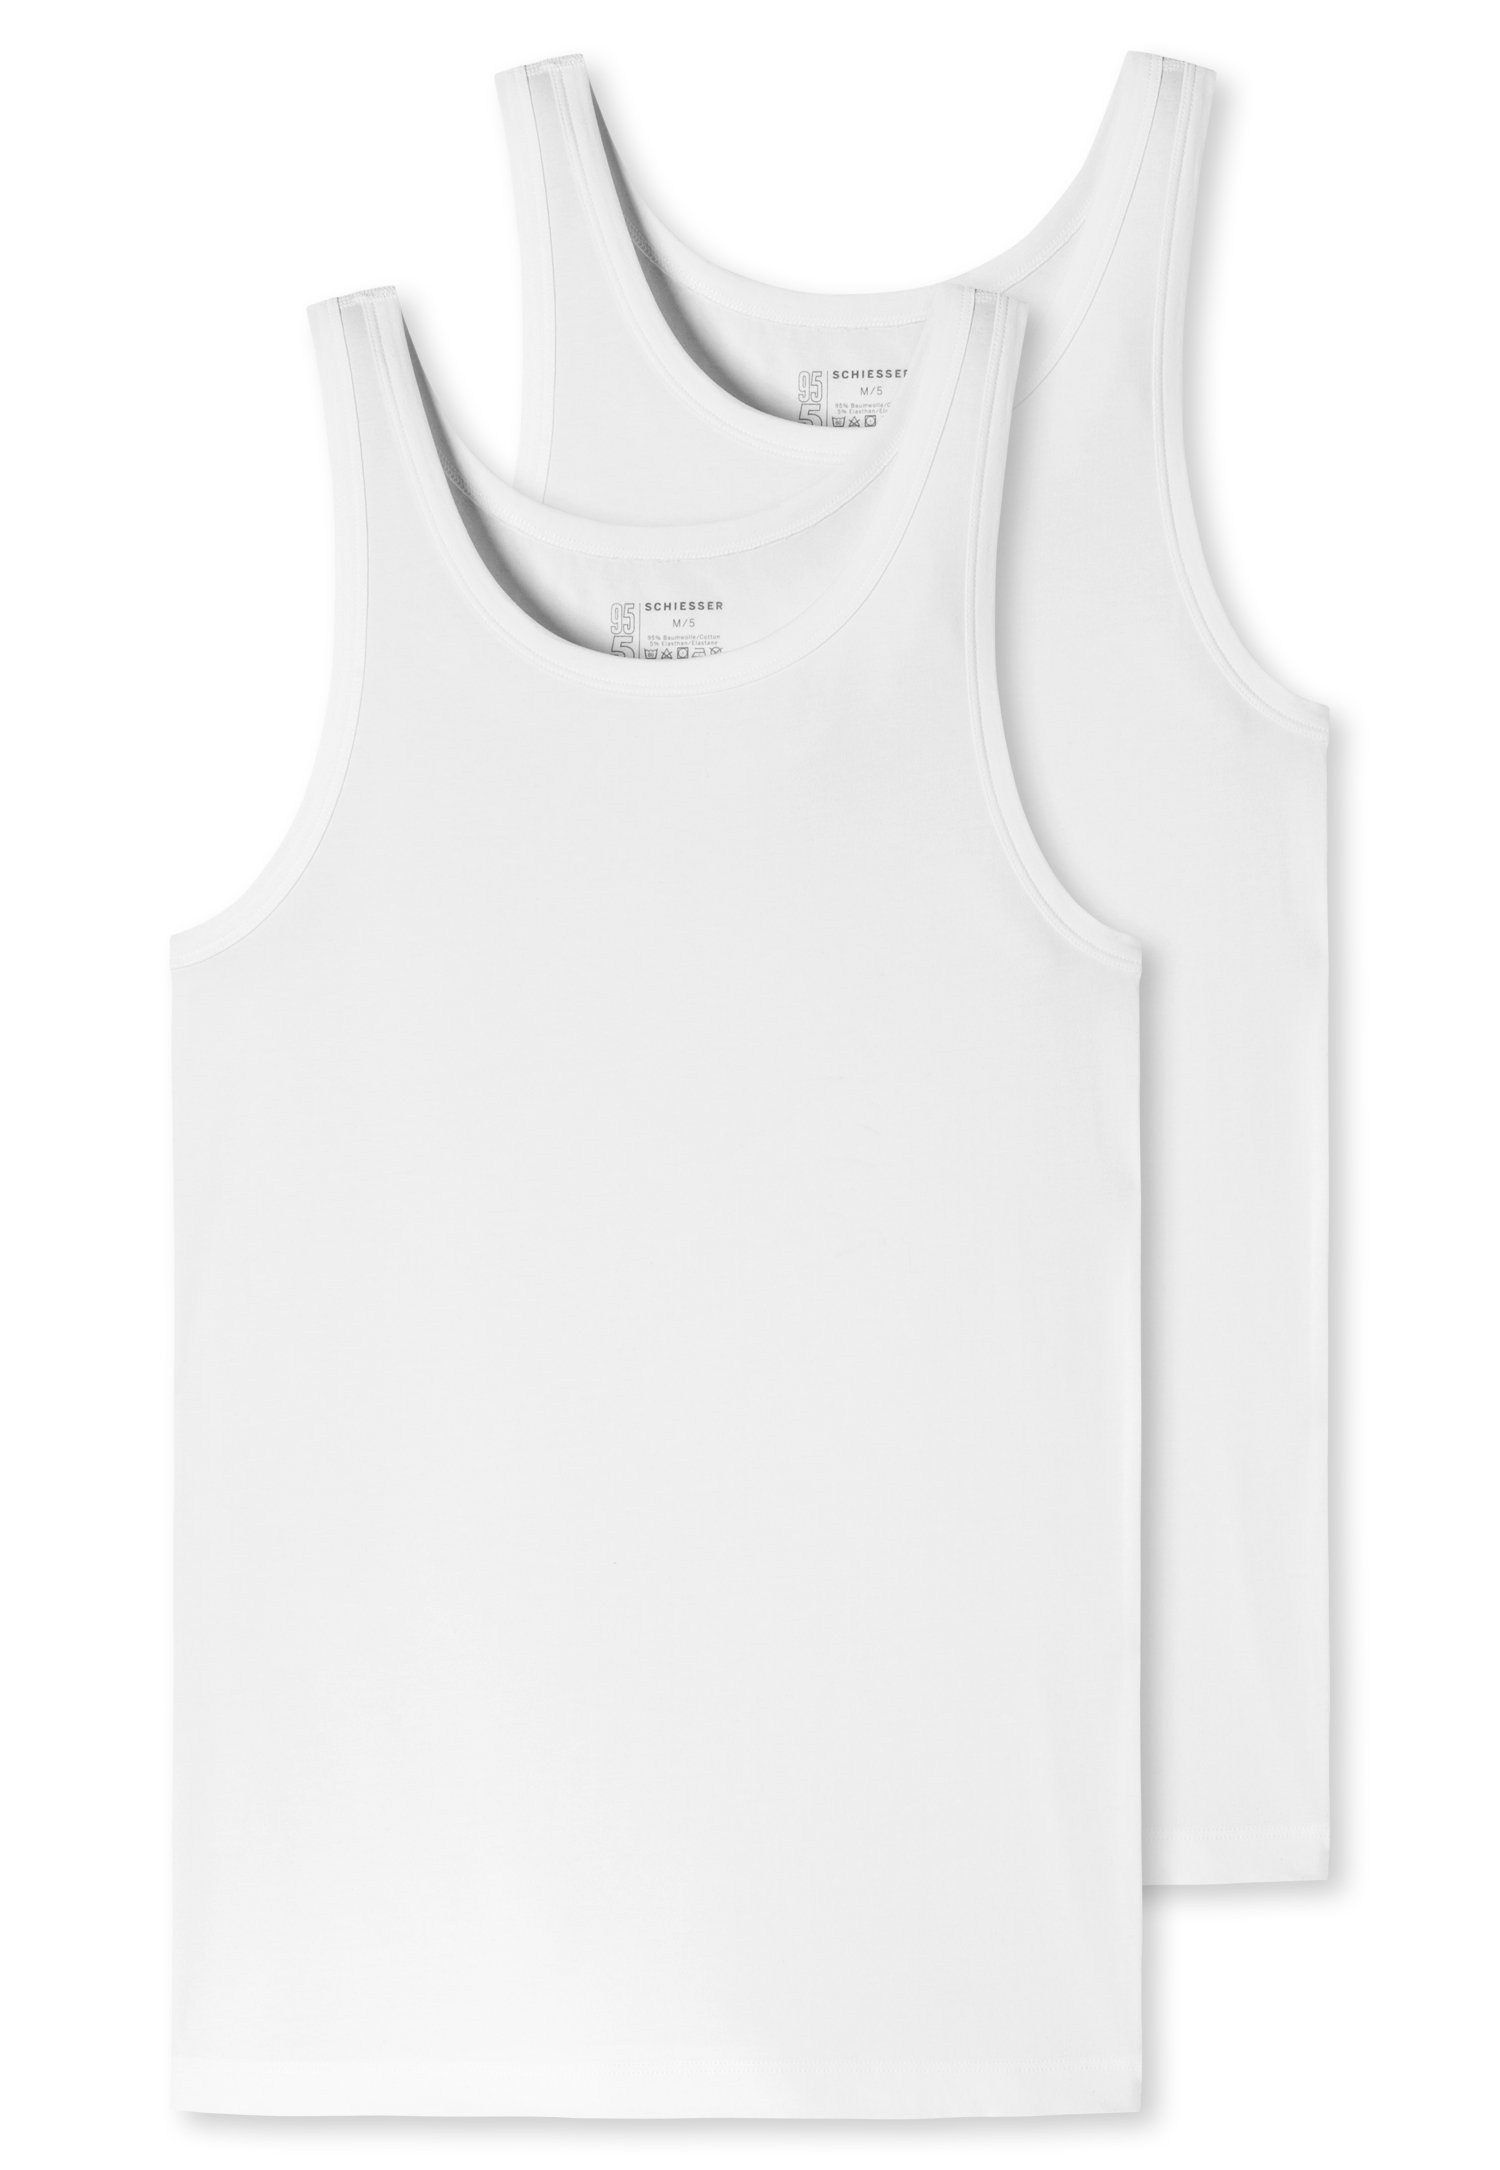 Schiesser Unterhemd (2er-Pack) mit Nähten weiß seitlichen